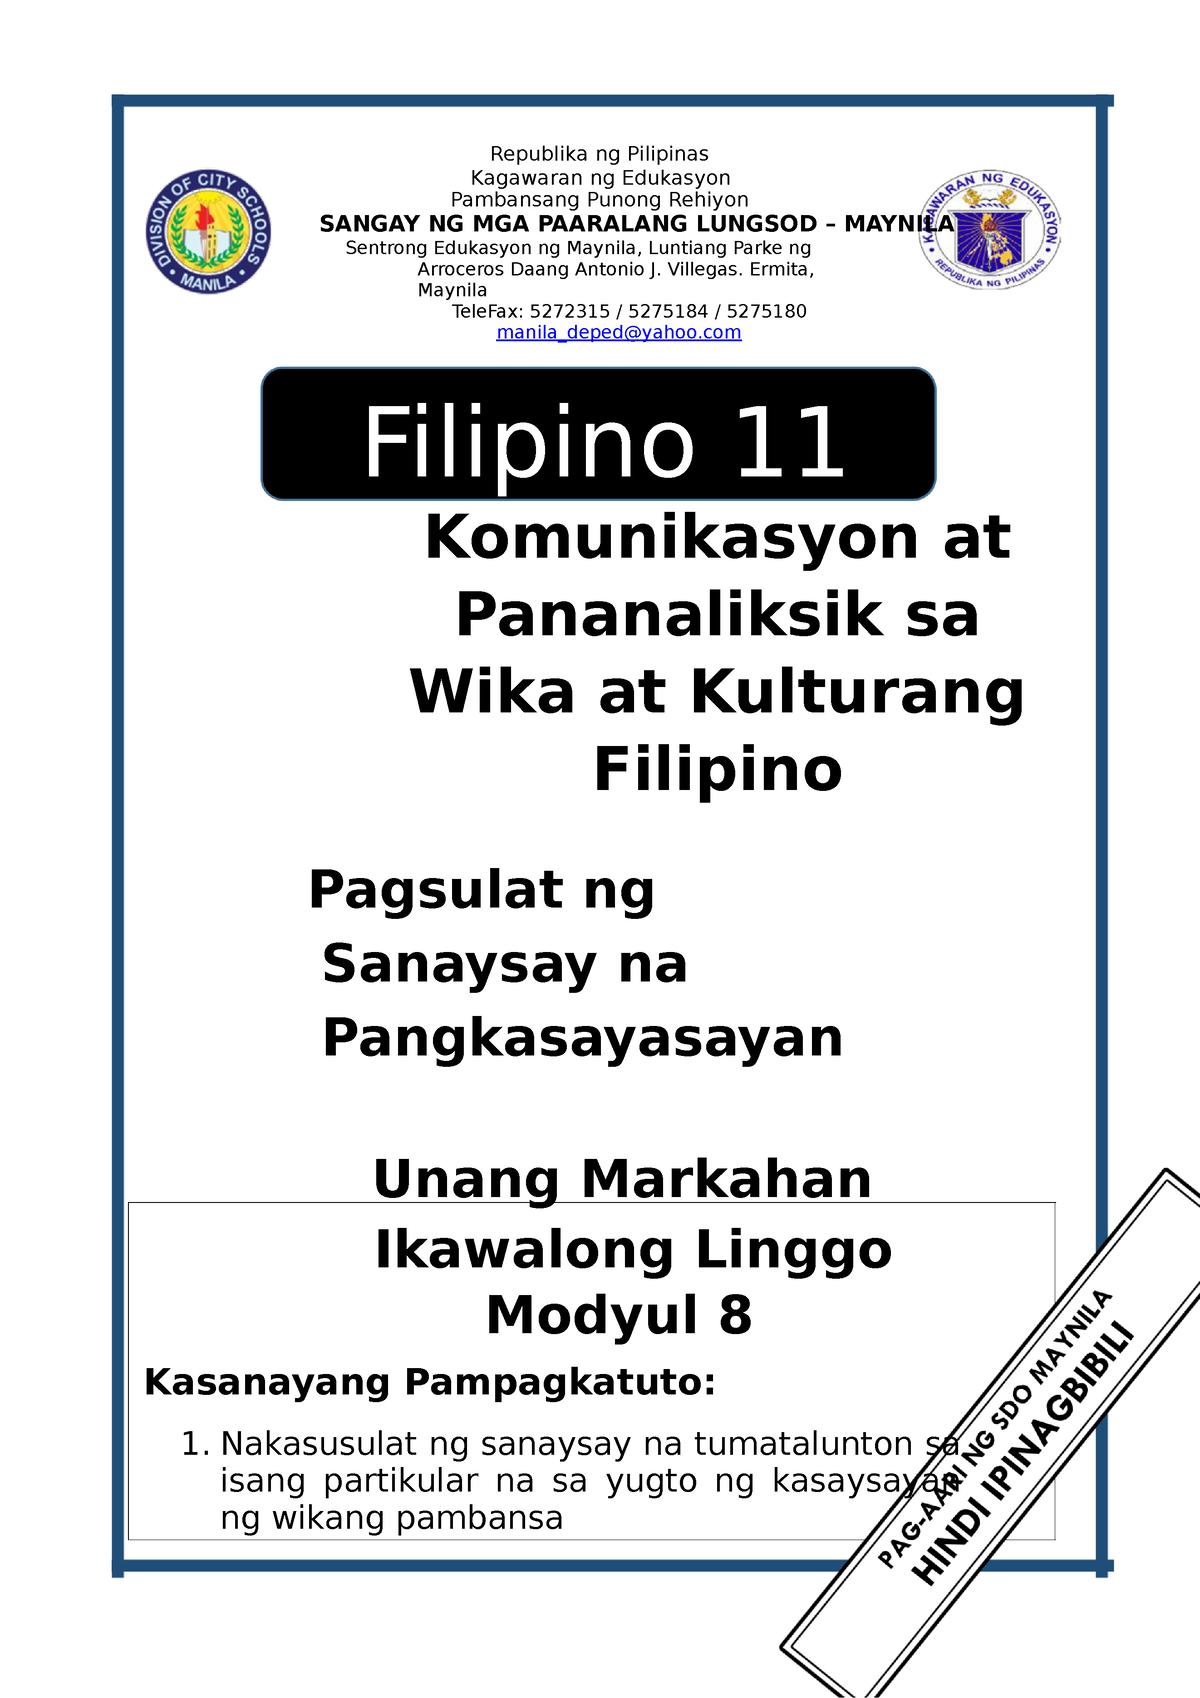 Filipino 11 Q1 Mod8 Modyul Na Gawain Republika Ng Pil 9370